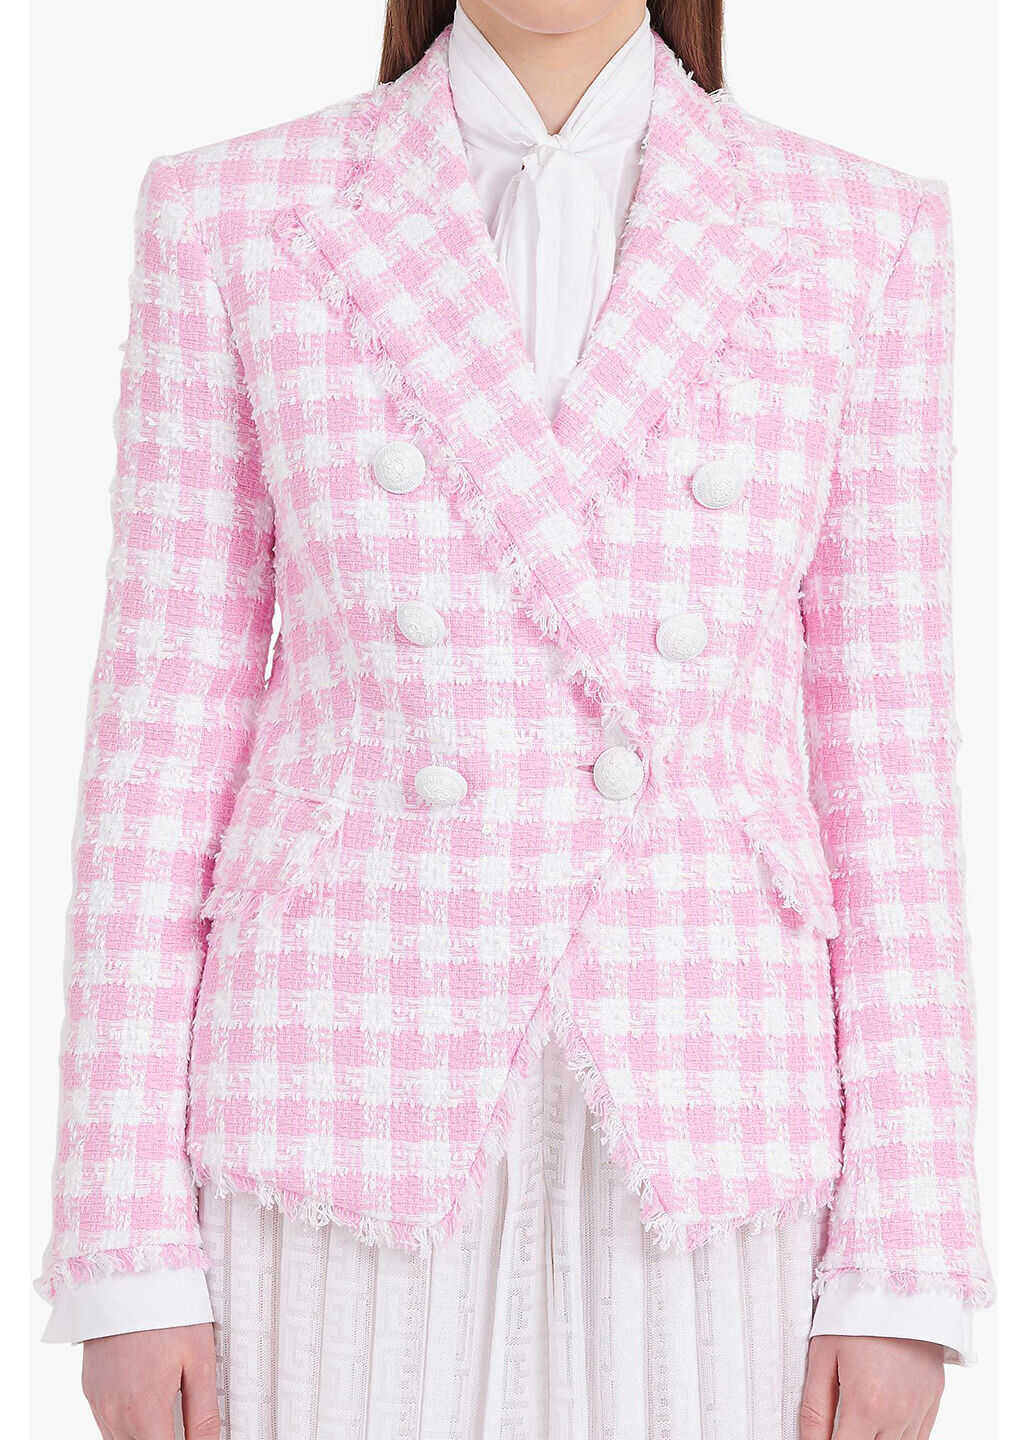 Balmain White And Pink Gingham Print Tweed Jacket WF1SG000C307 White/pink